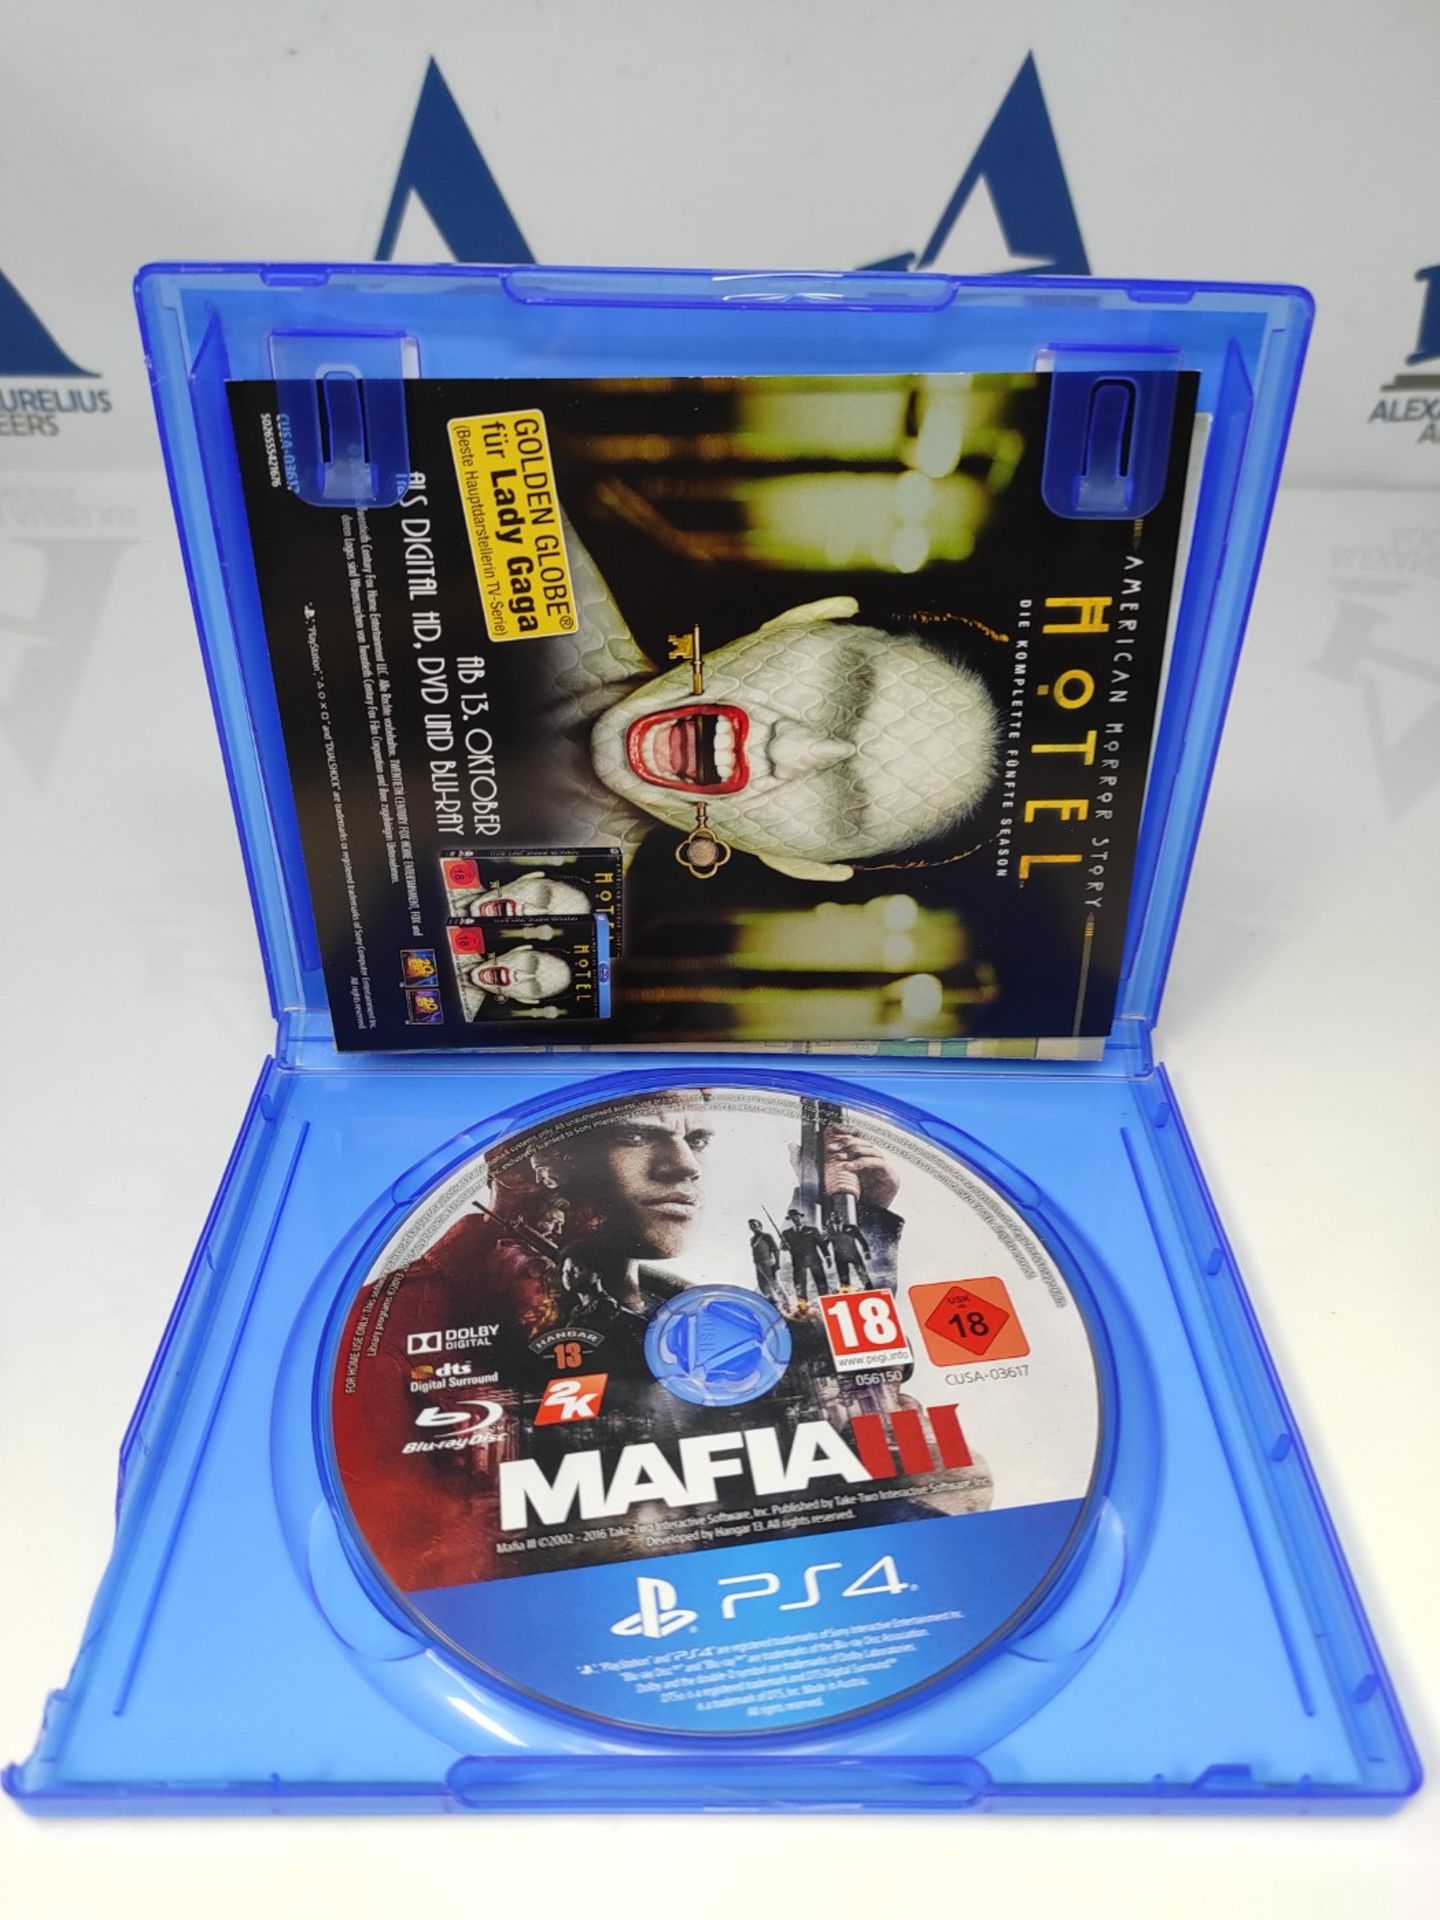 Mafia III - [PlayStation 4] - Image 3 of 3